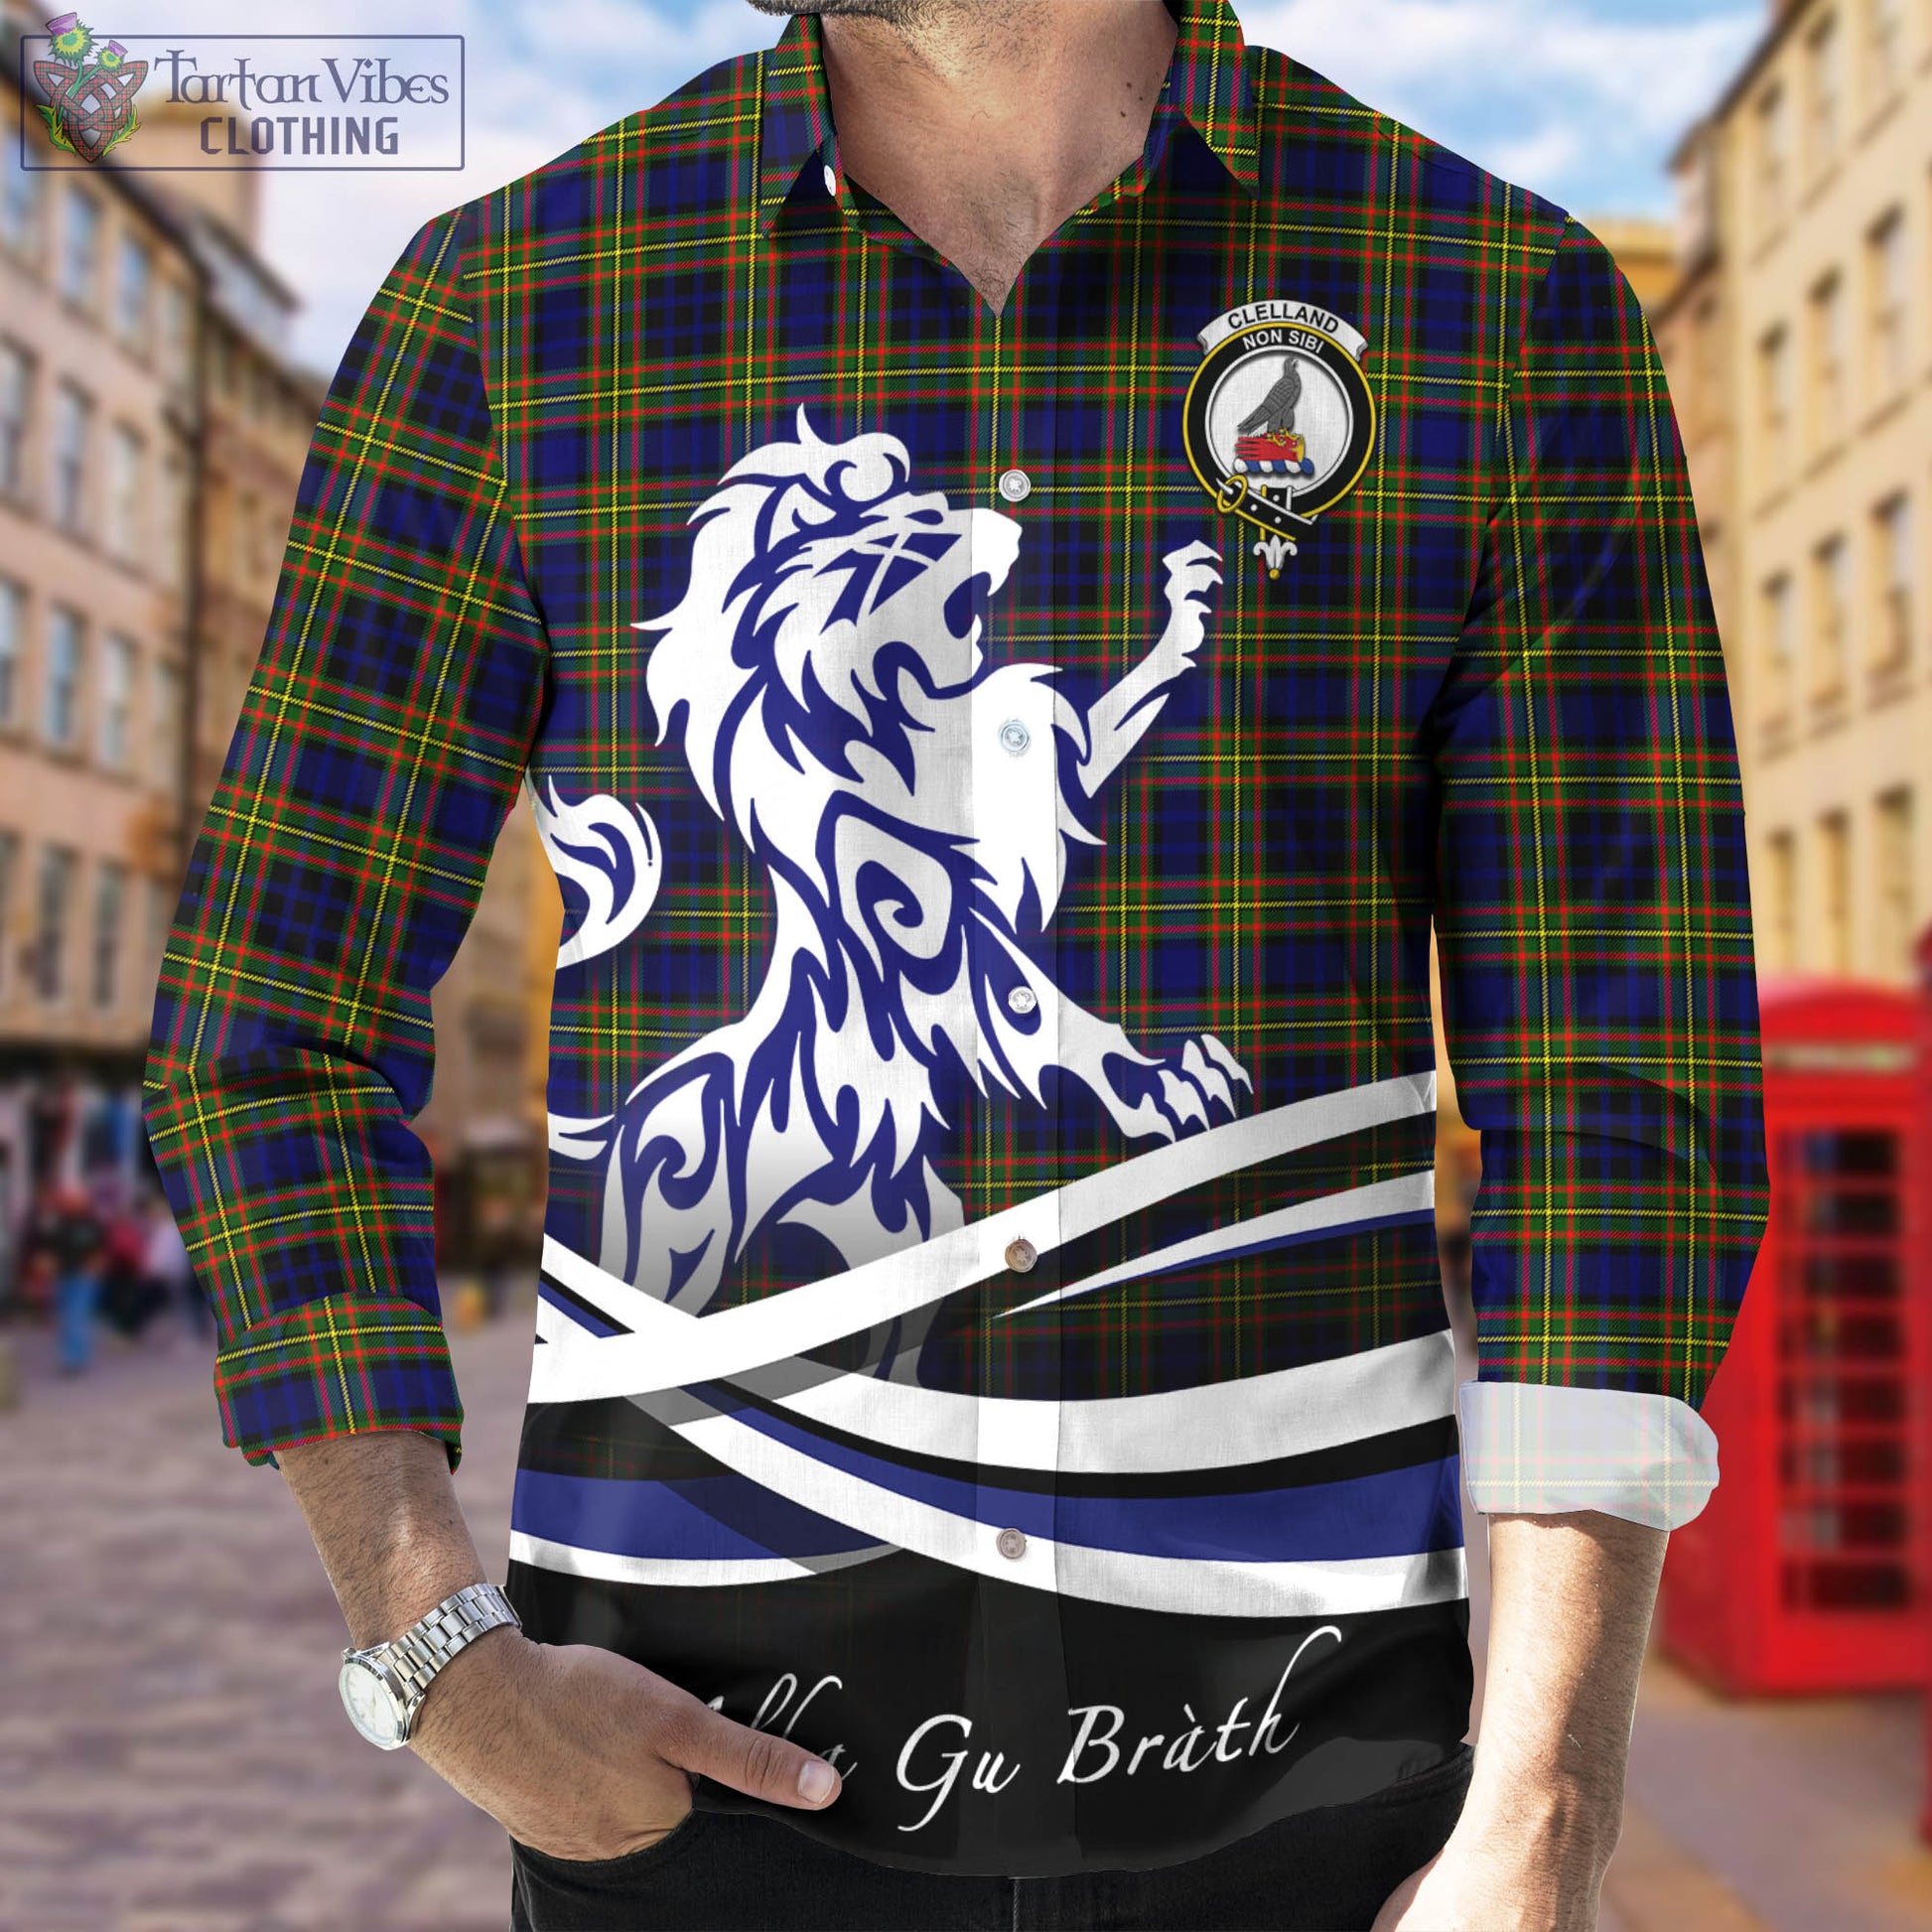 clelland-modern-tartan-long-sleeve-button-up-shirt-with-alba-gu-brath-regal-lion-emblem